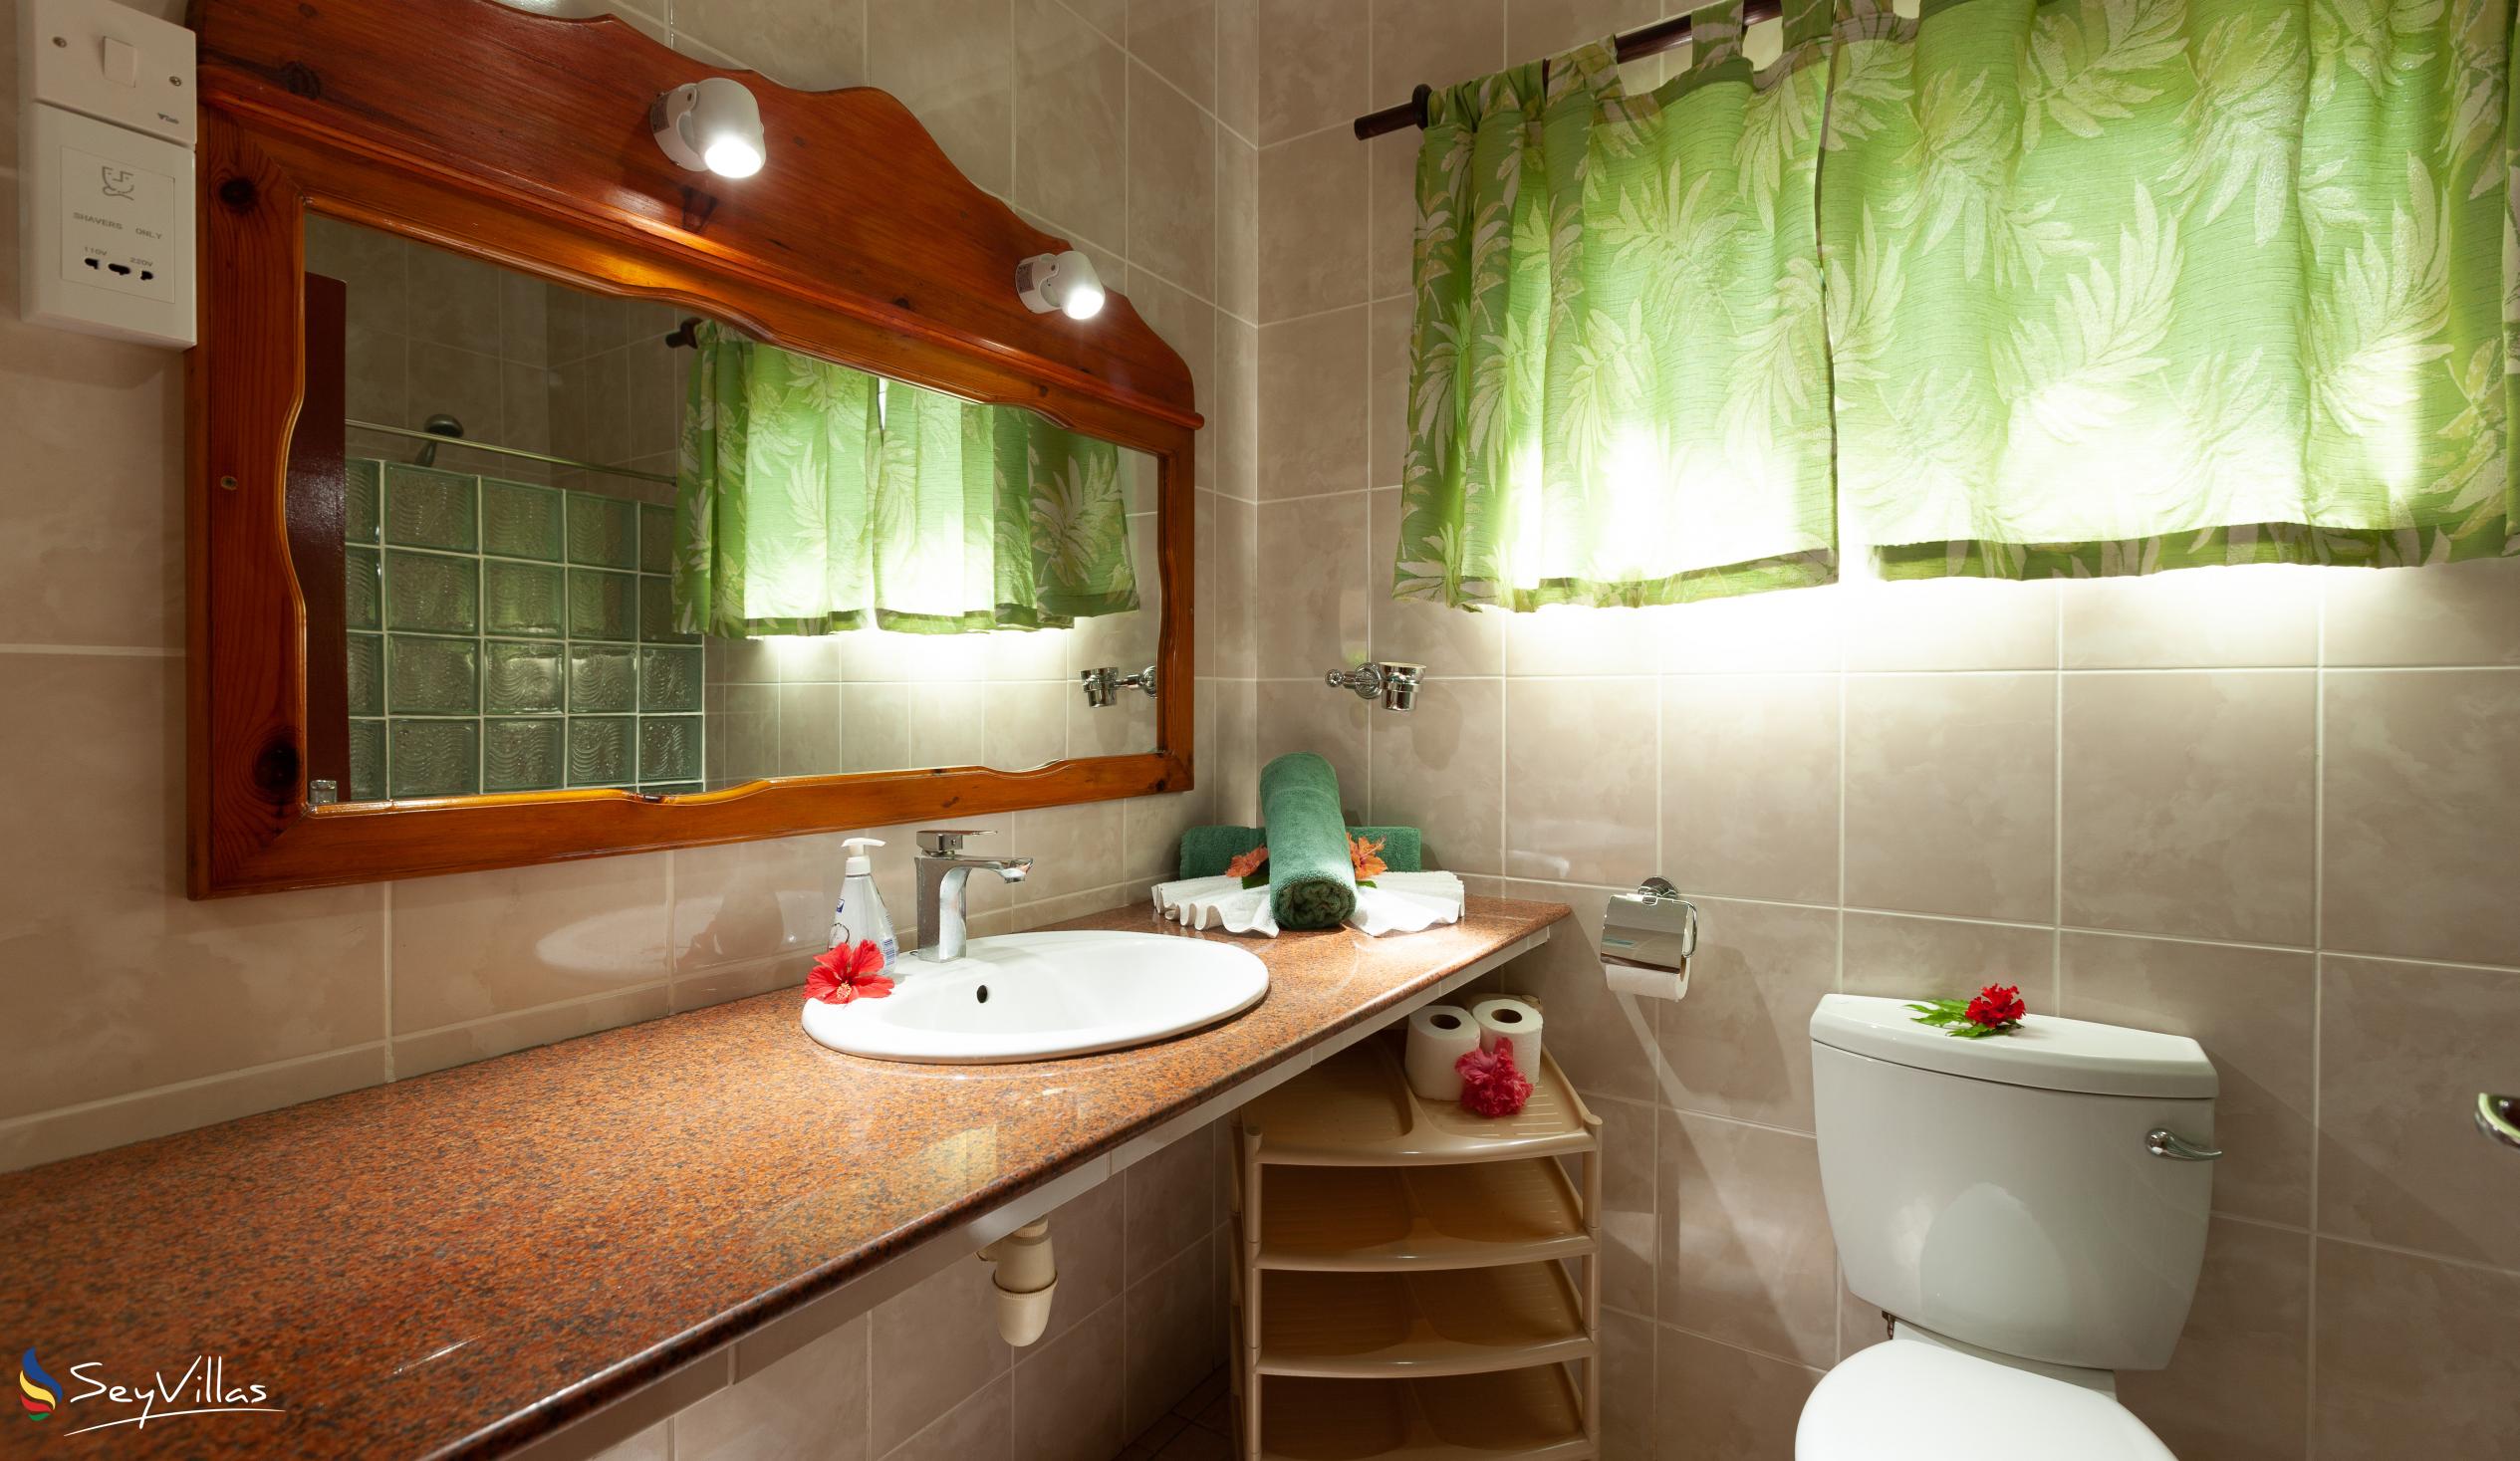 Foto 20: Pension Hibiscus - Maison Eliza - Appartement Standard - La Digue (Seychelles)